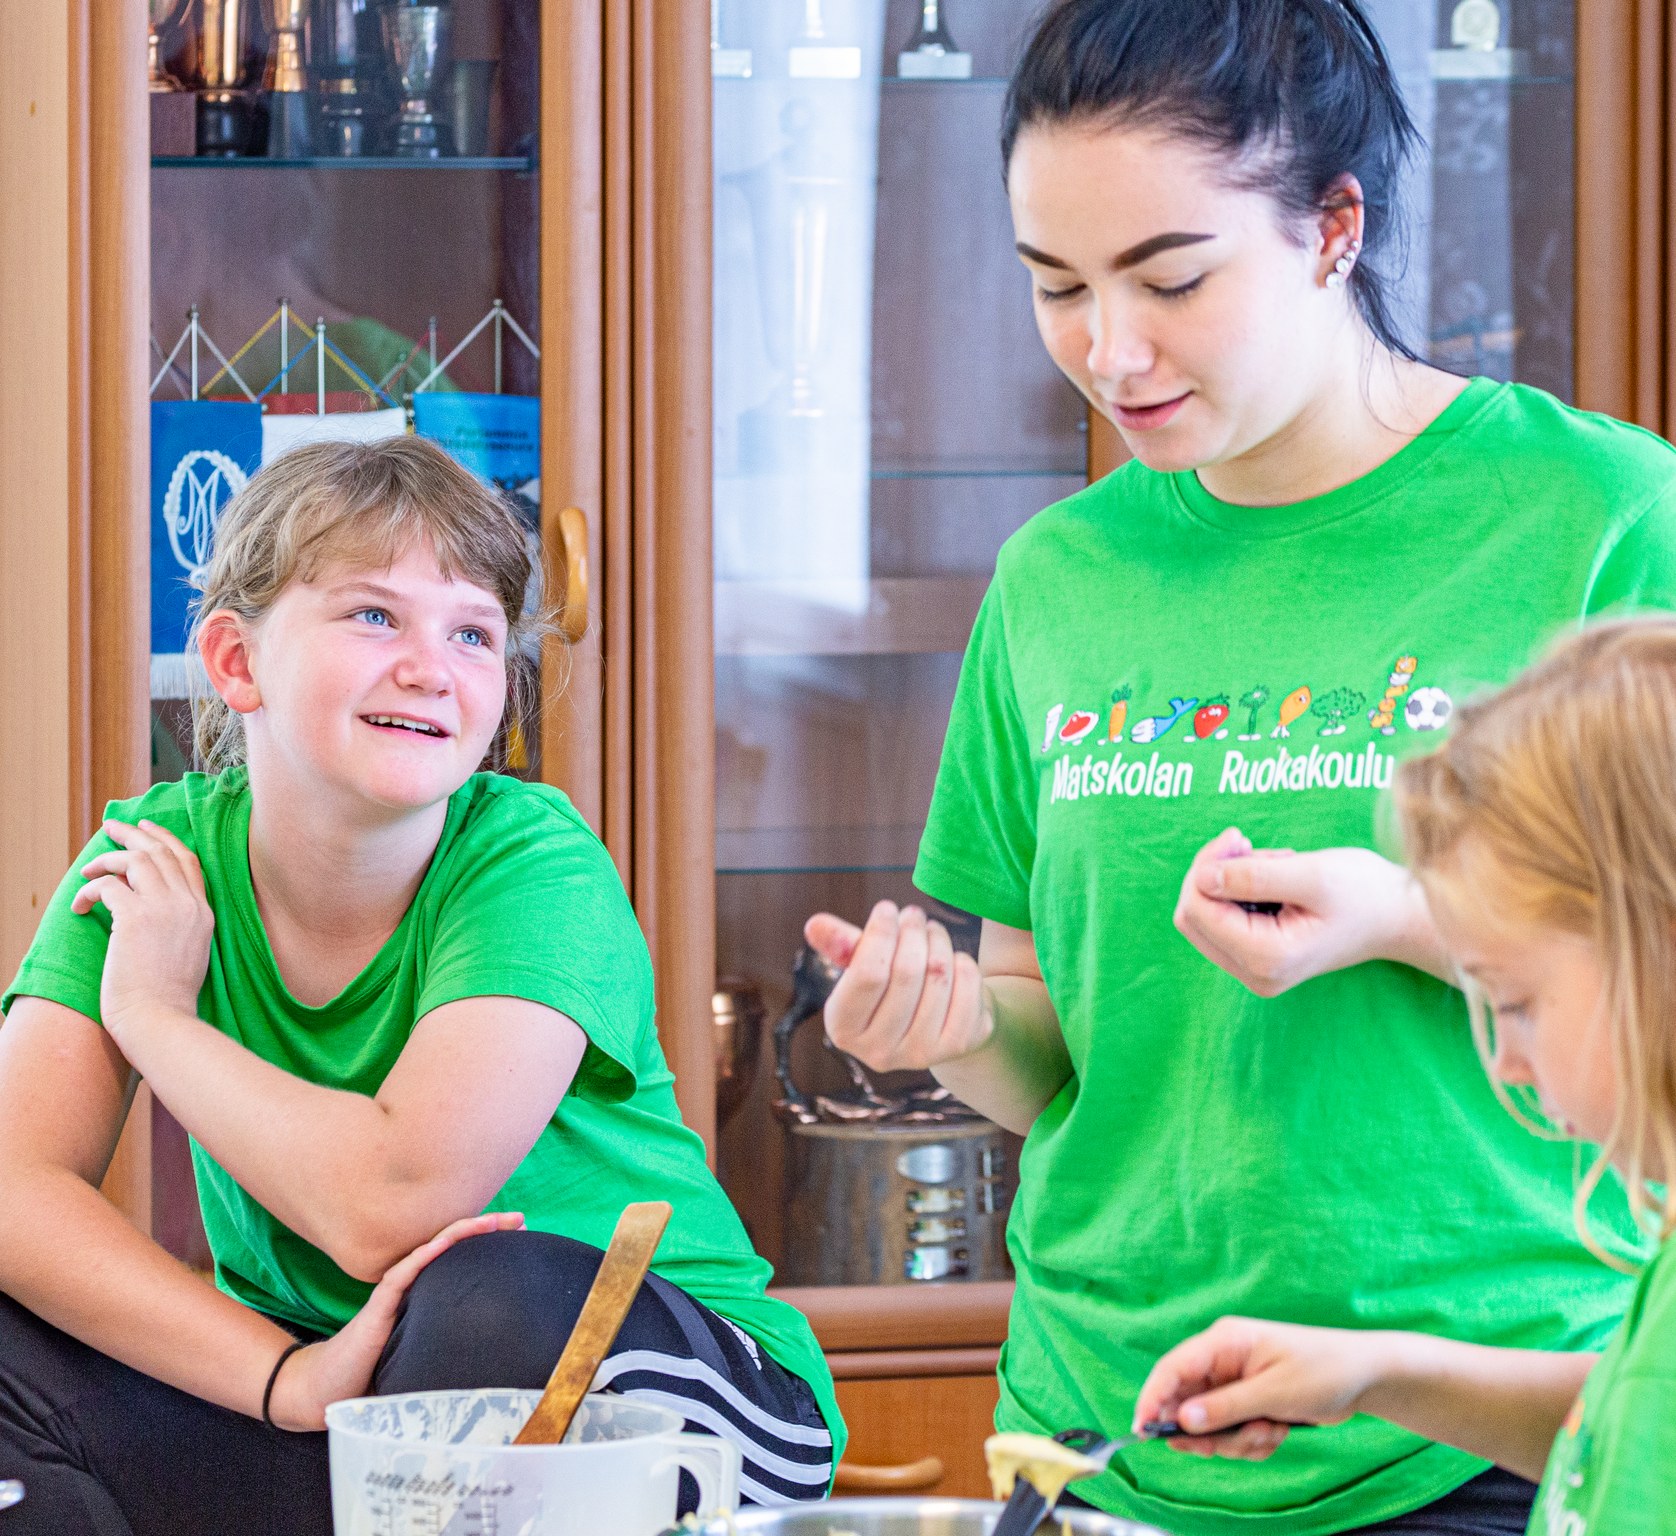 Kaksi lasta ja ohjaaja Ruokakoulussa vihreät Ruokakoulu t-paidat päällä